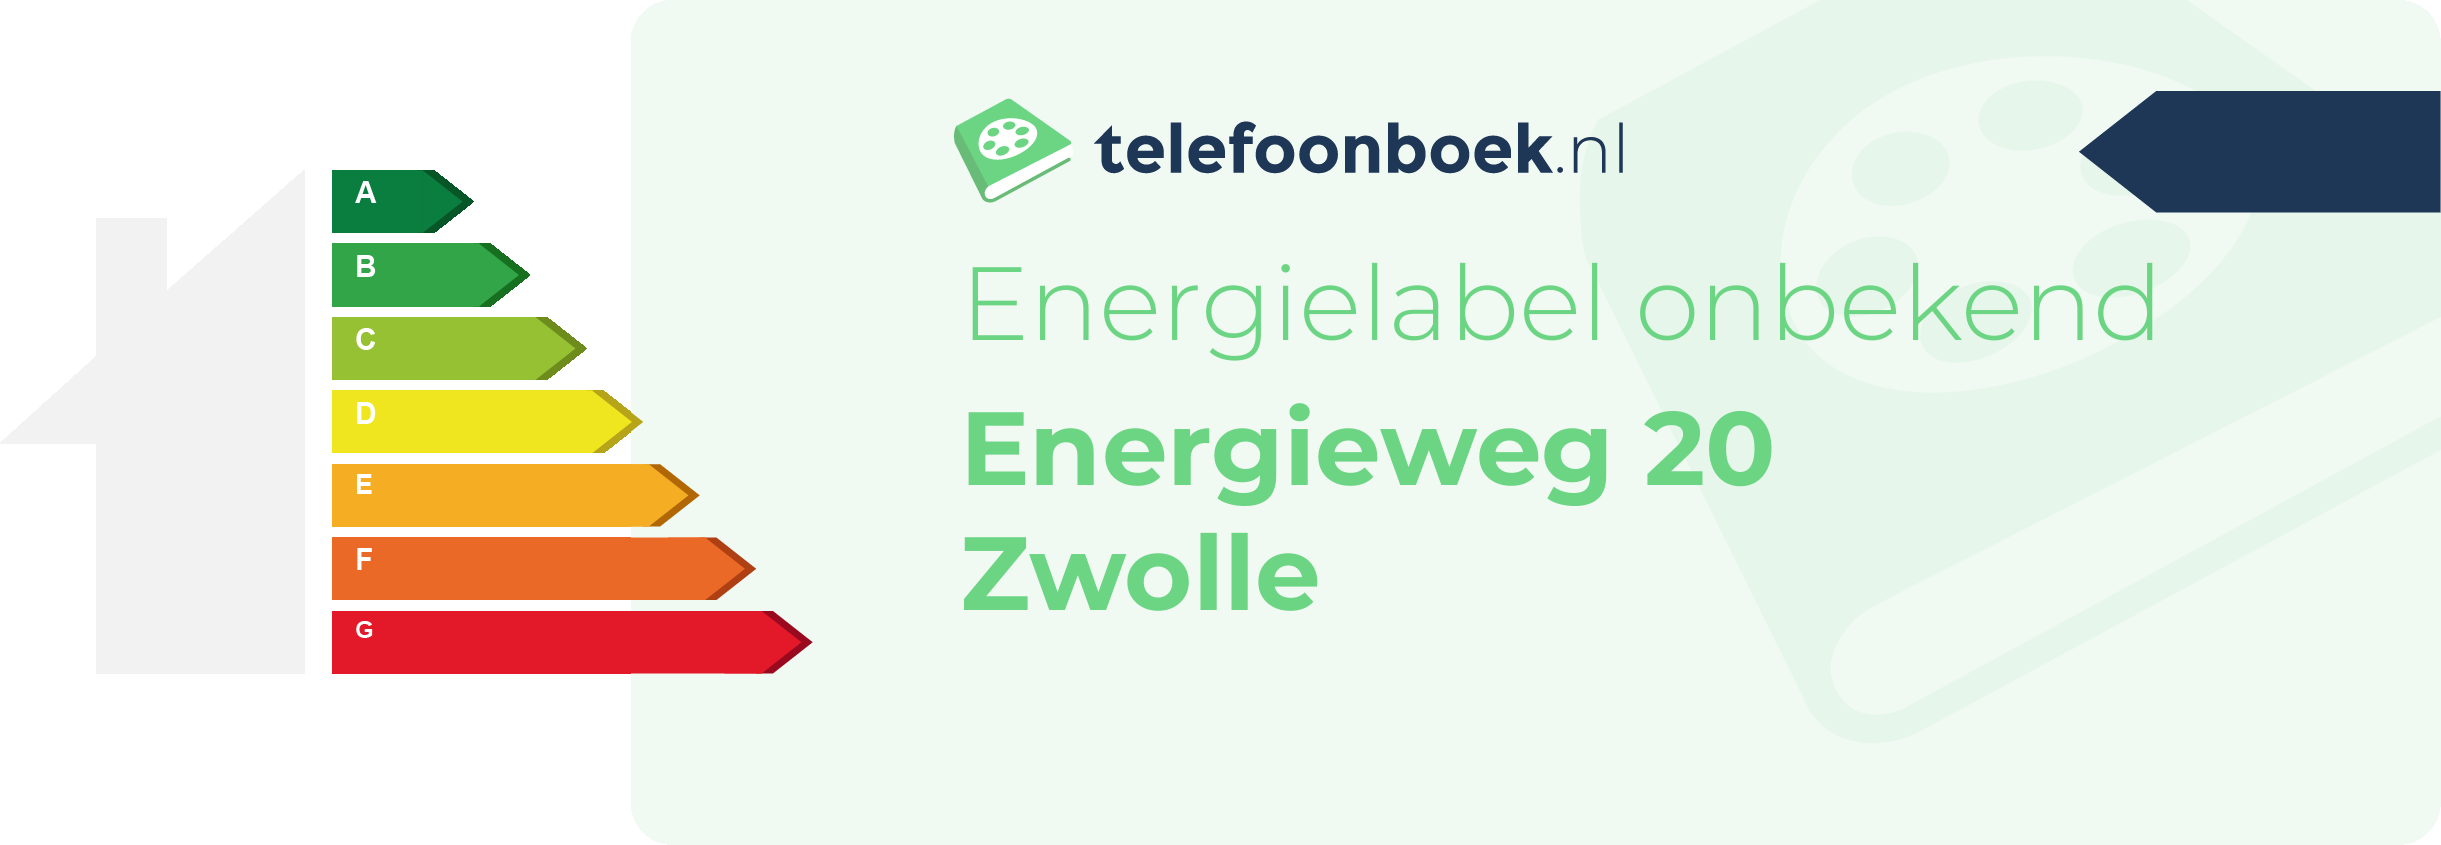 Energielabel Energieweg 20 Zwolle